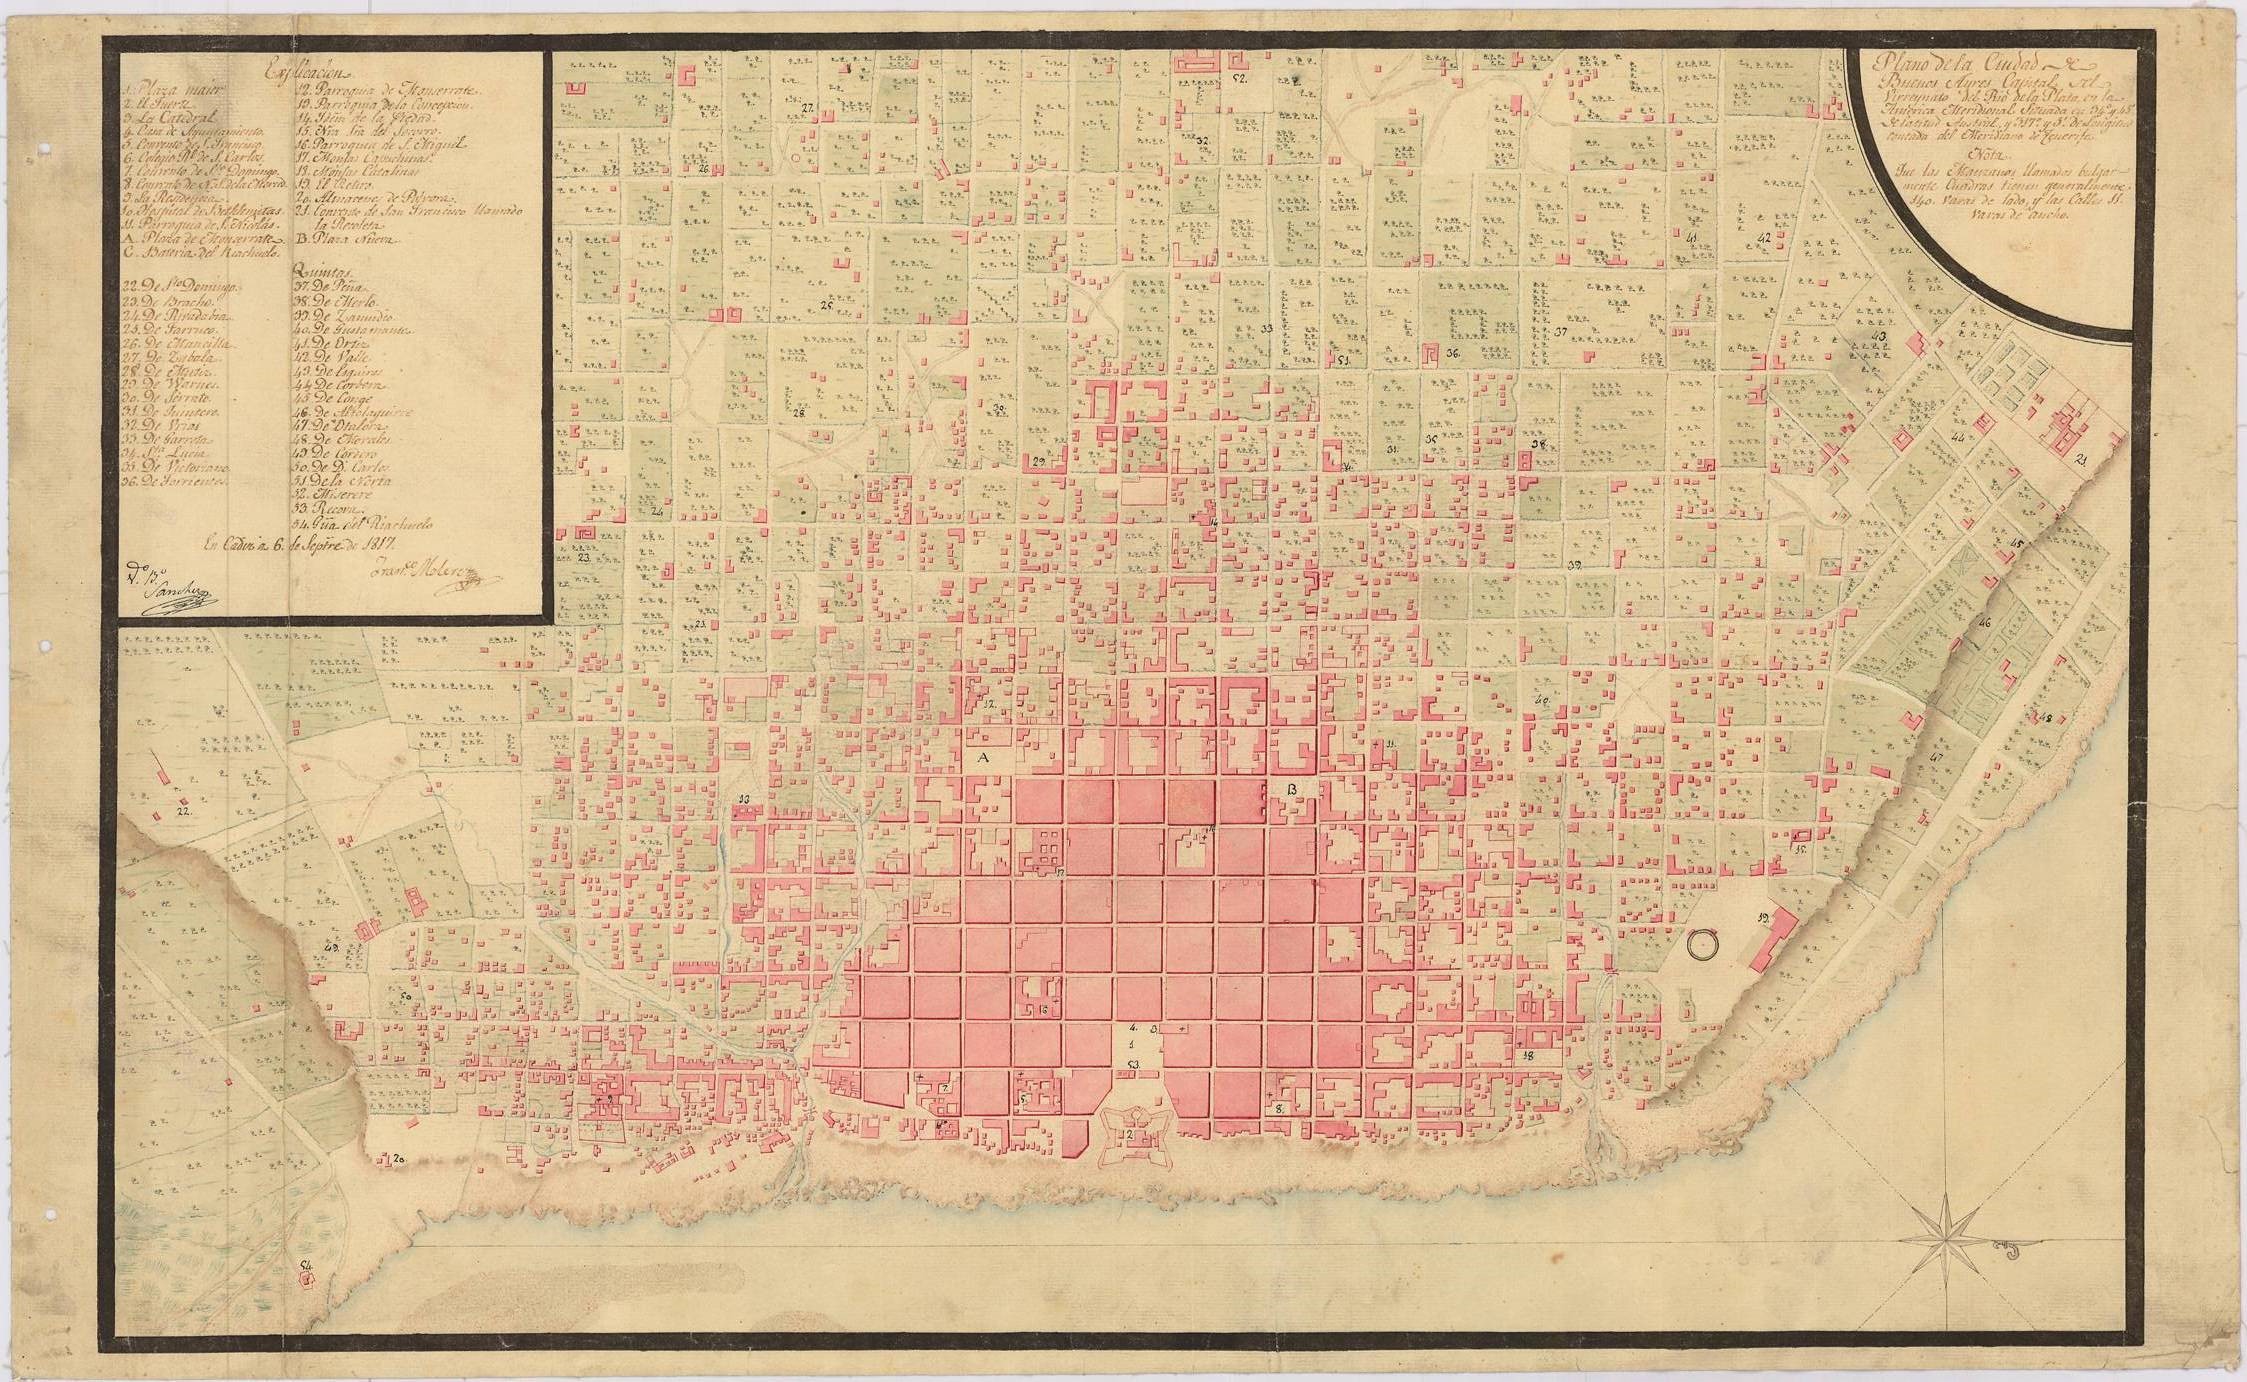 Plano de la ciudad de Buenos Aires (1817)